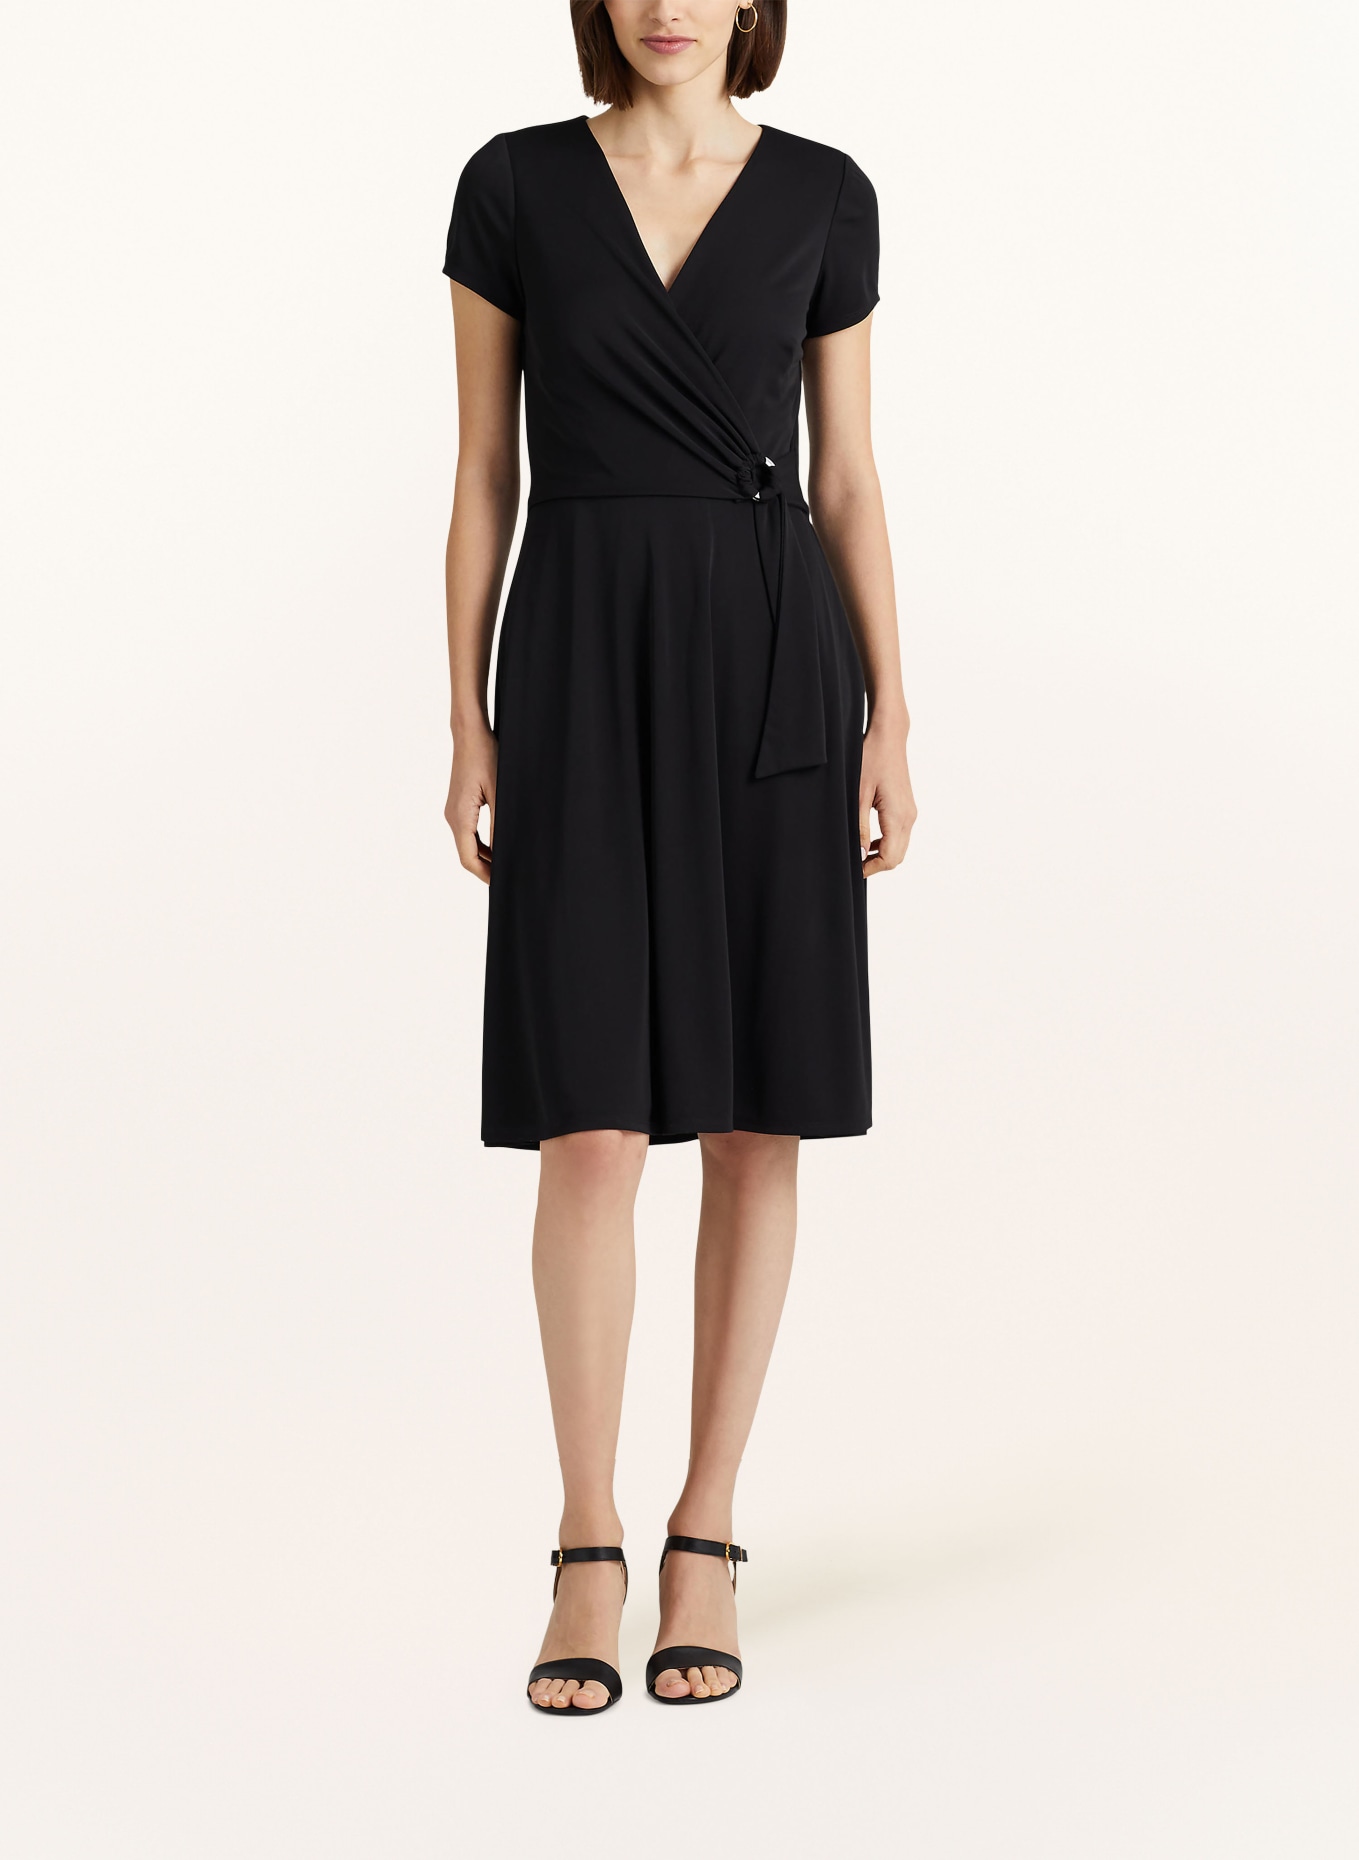 LAUREN RALPH LAUREN Jersey dress in wrap look, Color: BLACK (Image 2)